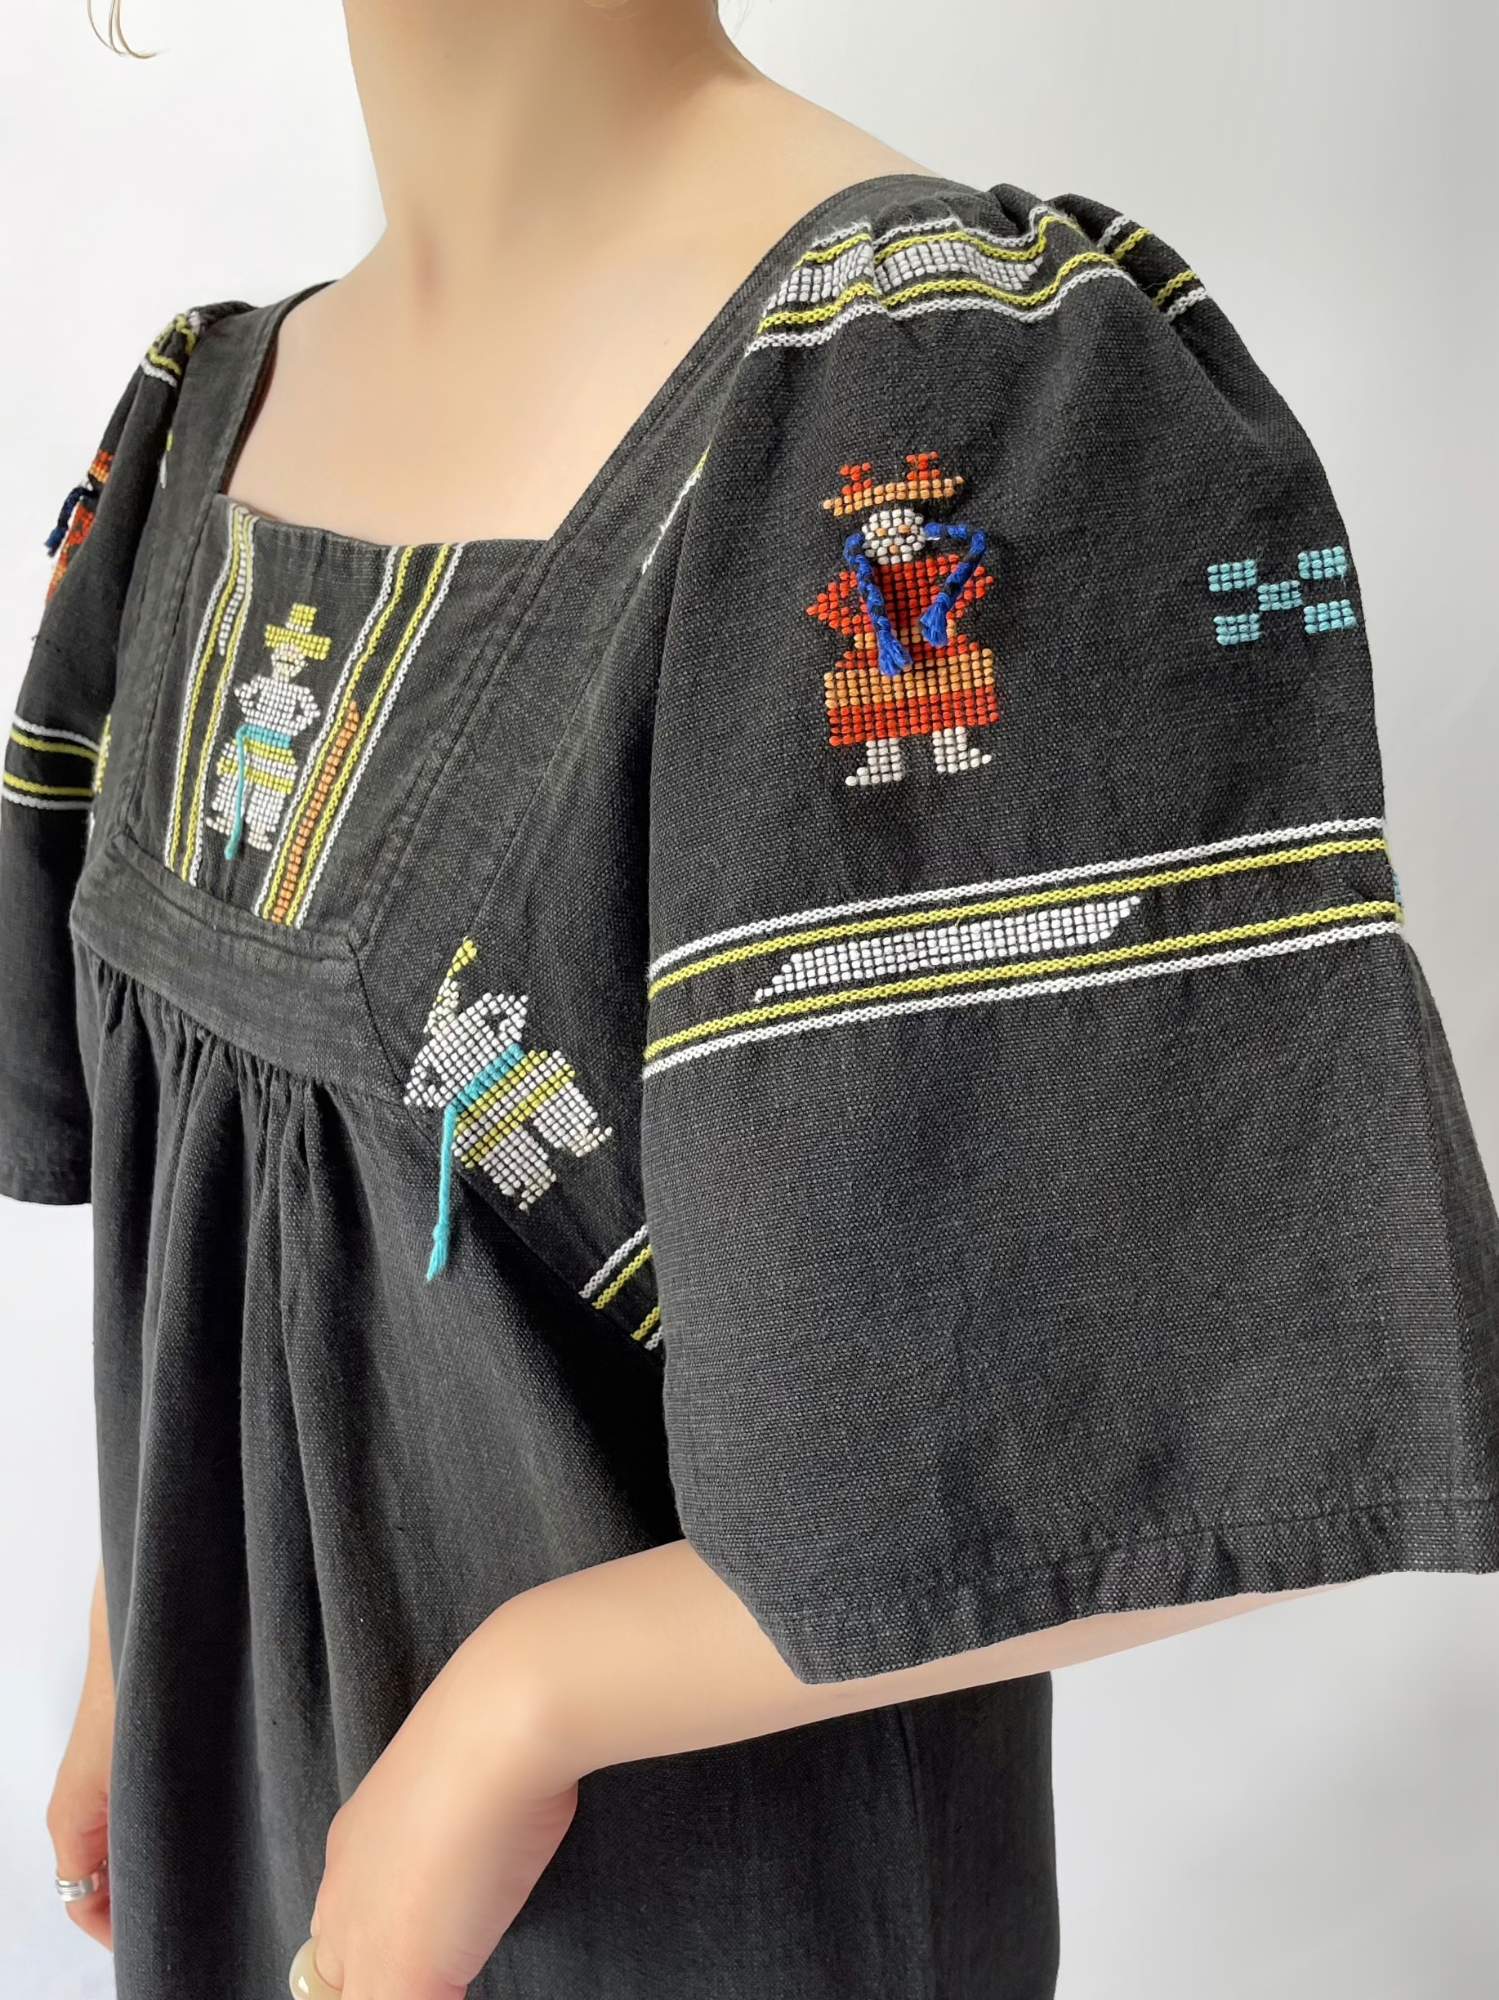 グァテマラ 民族衣装 ウィピル ポンチョ ハンドメイド 刺繍 手刺繍 ...